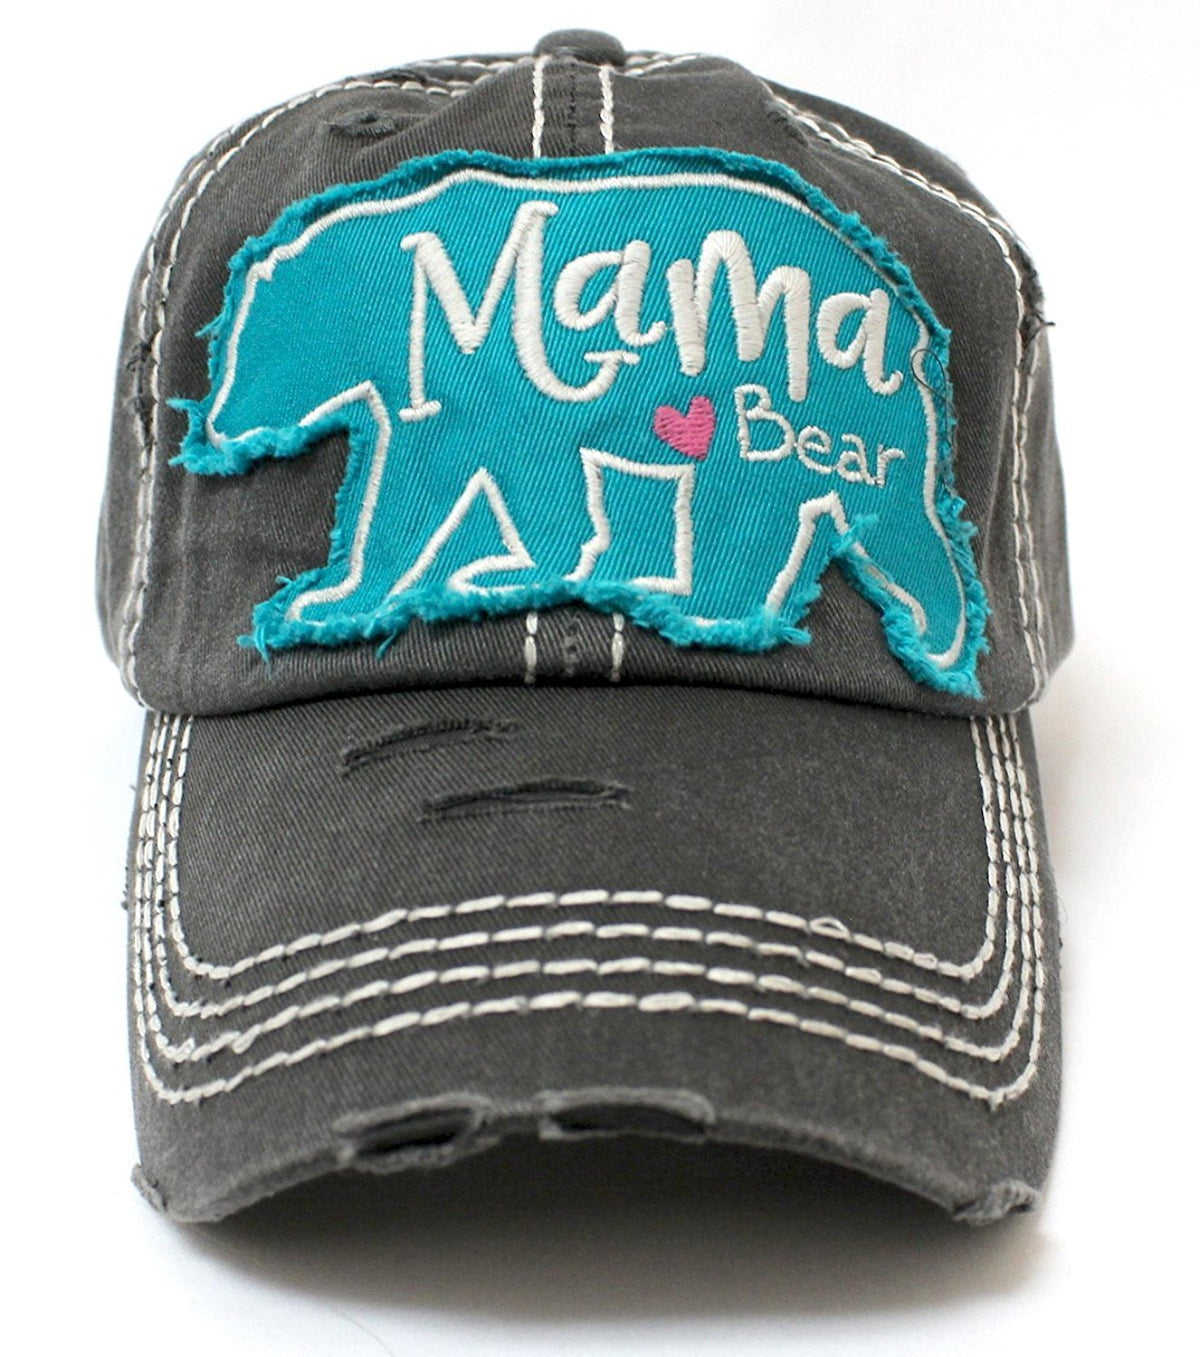 CAPS 'N VINTAGE Vintage Black Mama <3 Bear Geometric Patch Embroidery Hat - Caps 'N Vintage 